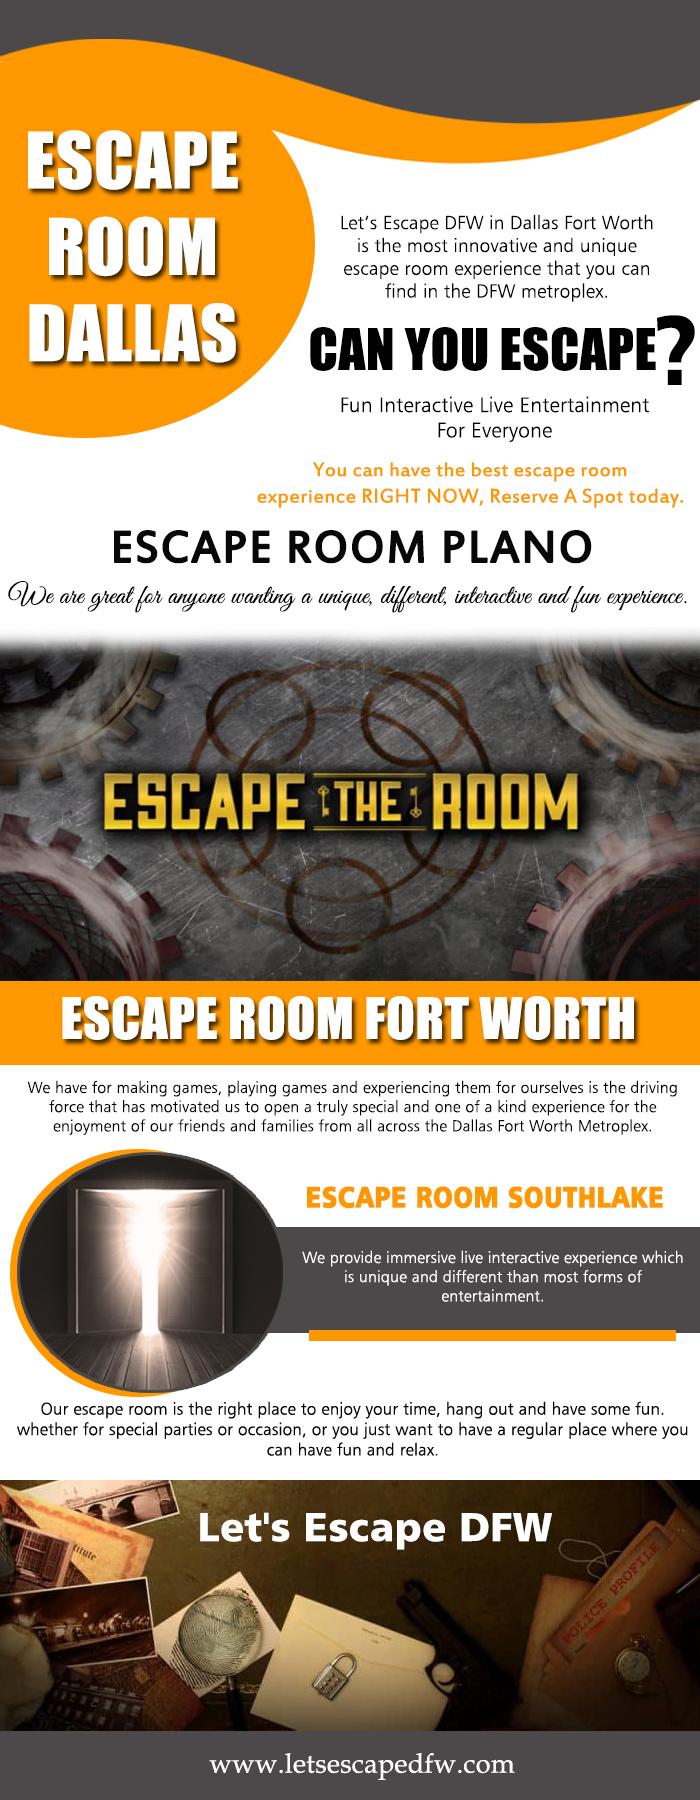 Escape Room Dallas